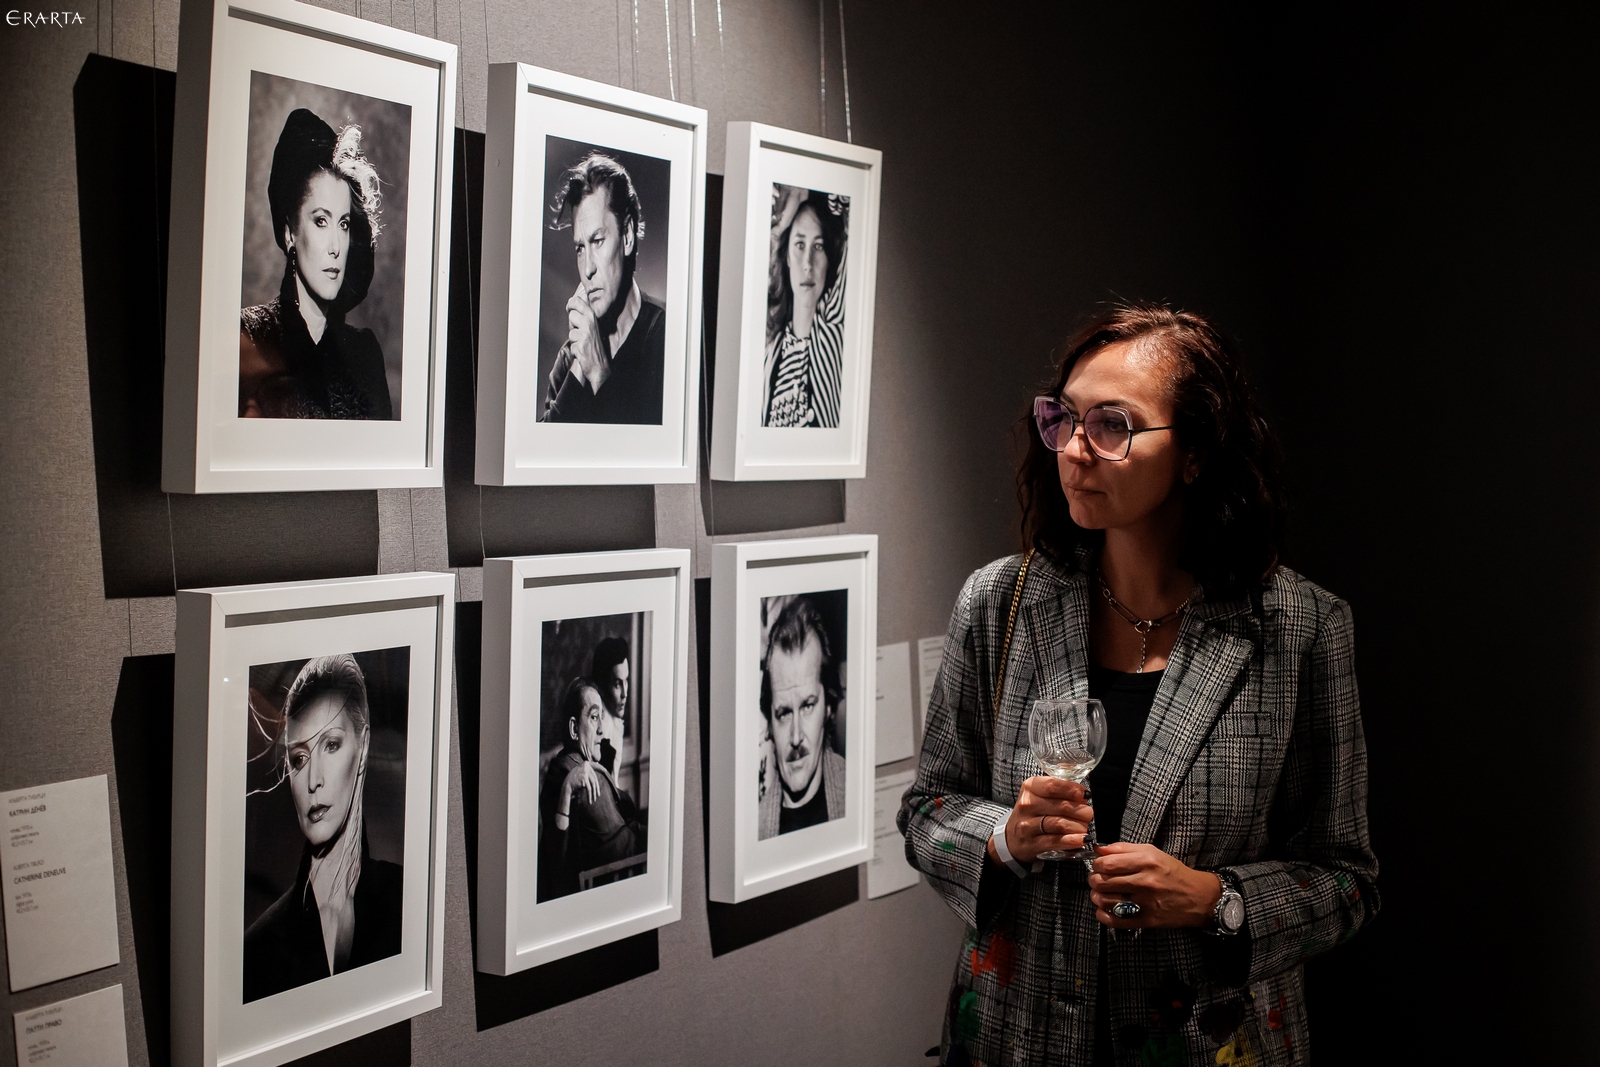 Photo Report: Private View of Alberta Tiburzi’s Exhibition